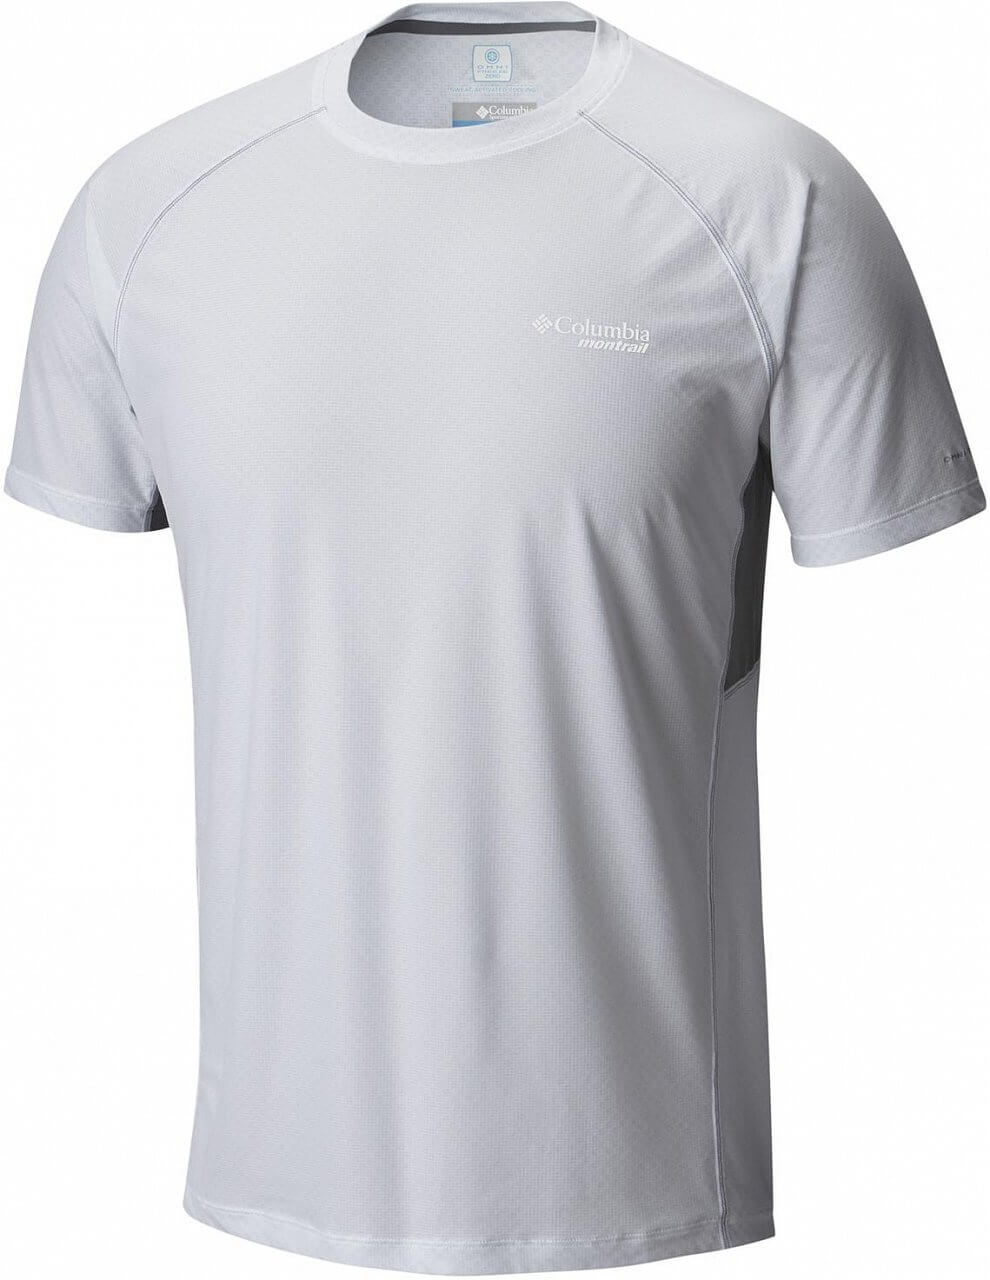 Pánské sportovní tričko Columbia Titan Ultra Short Sleeve Shirt